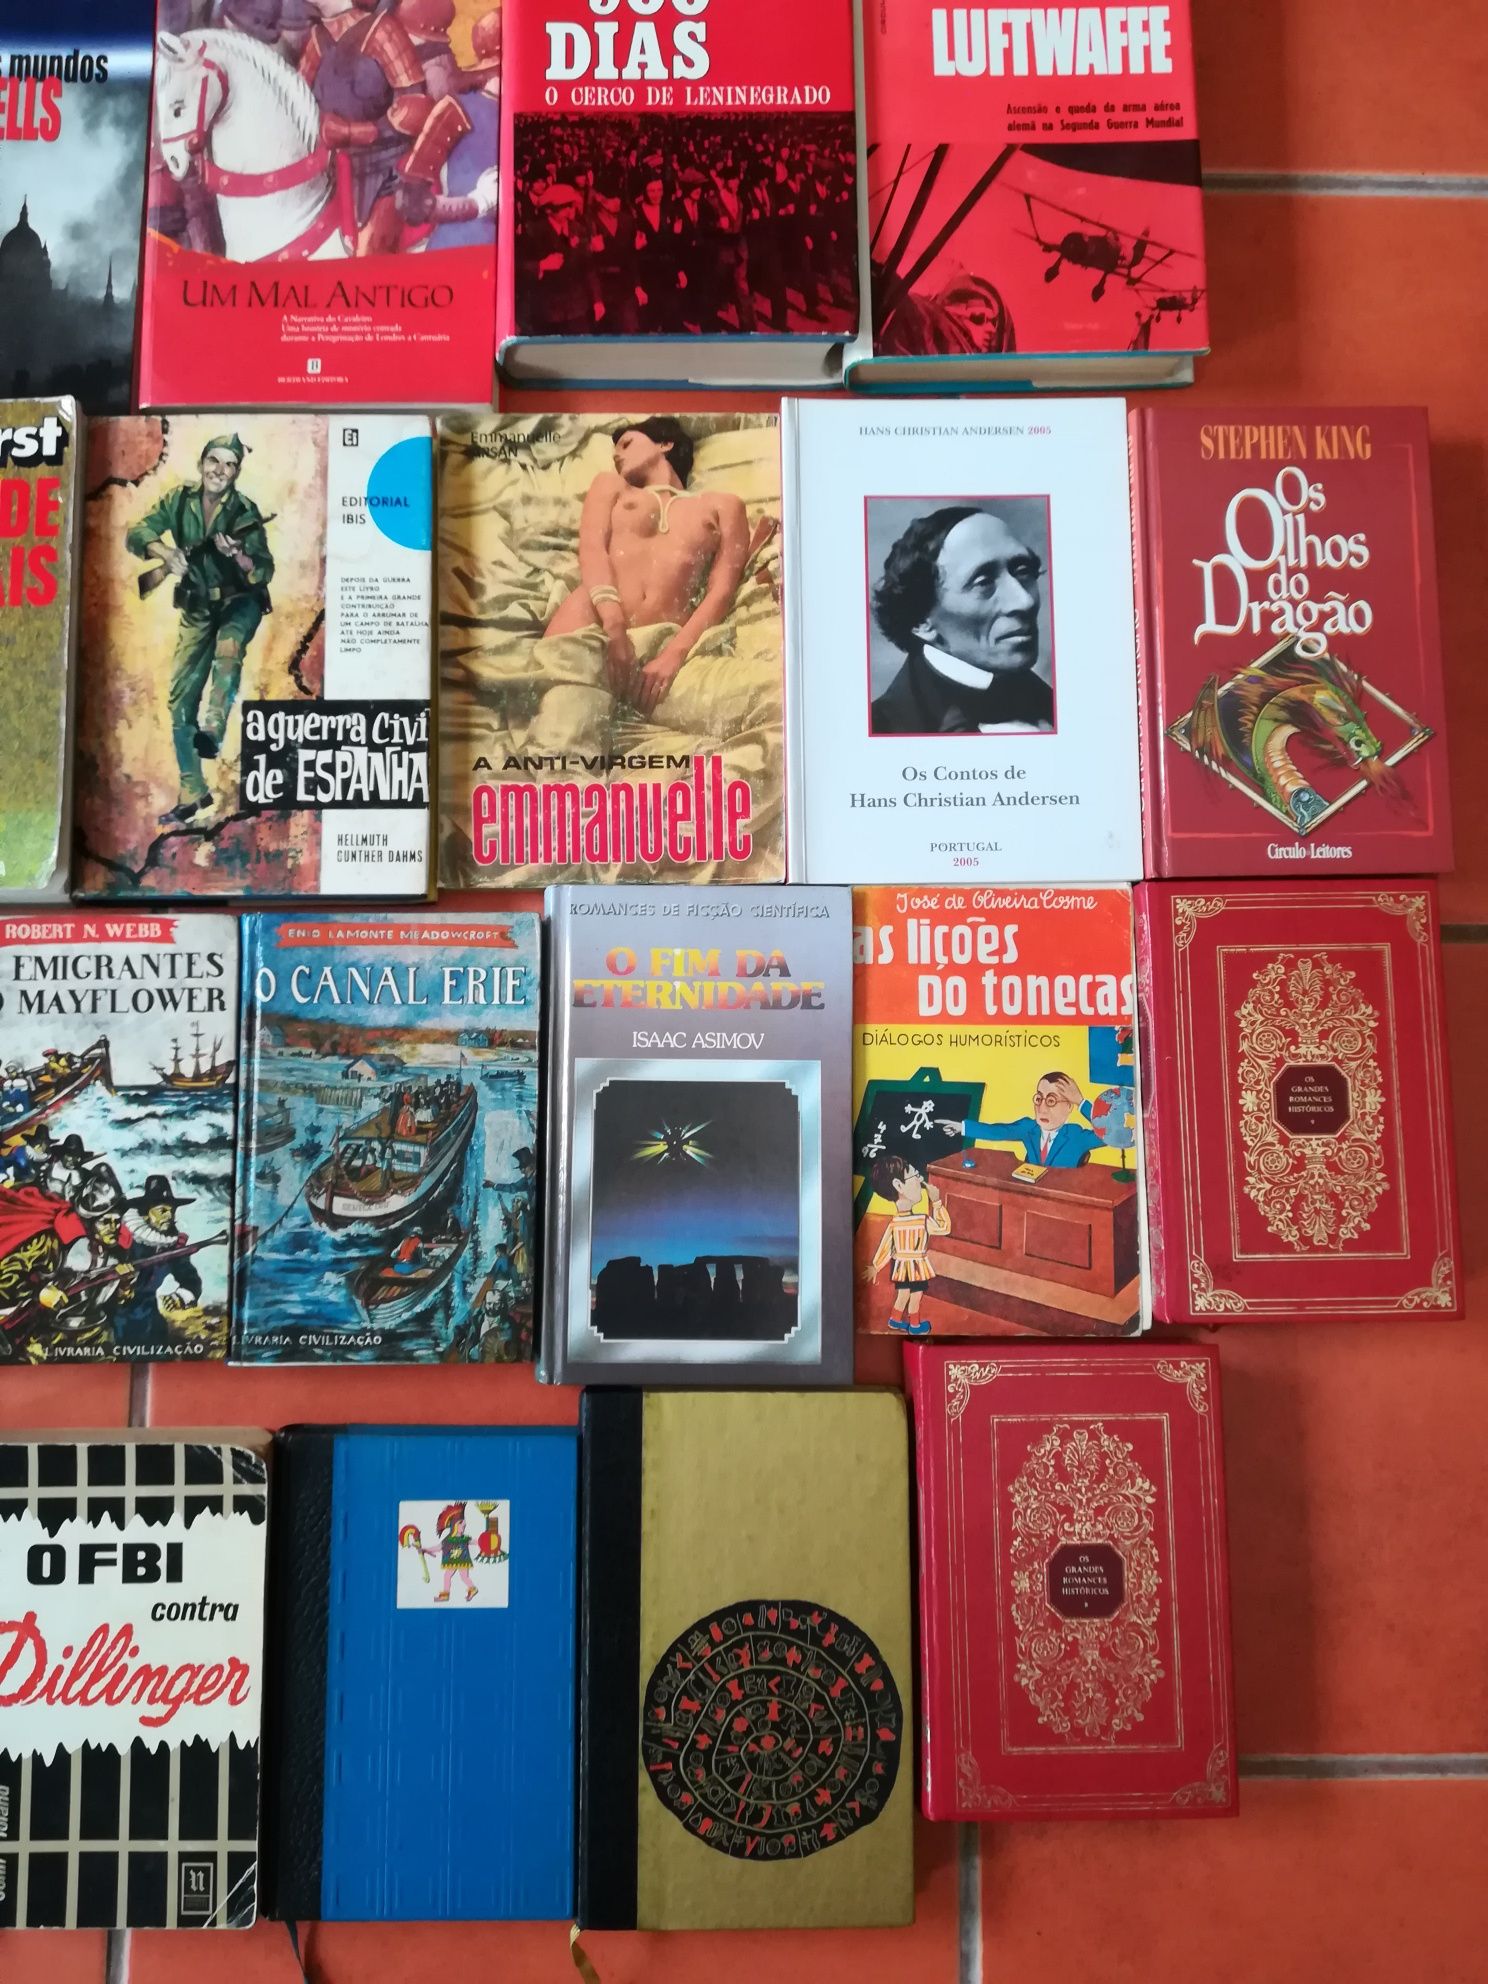 38 Livros de José Rodrigues dos Santos e outros